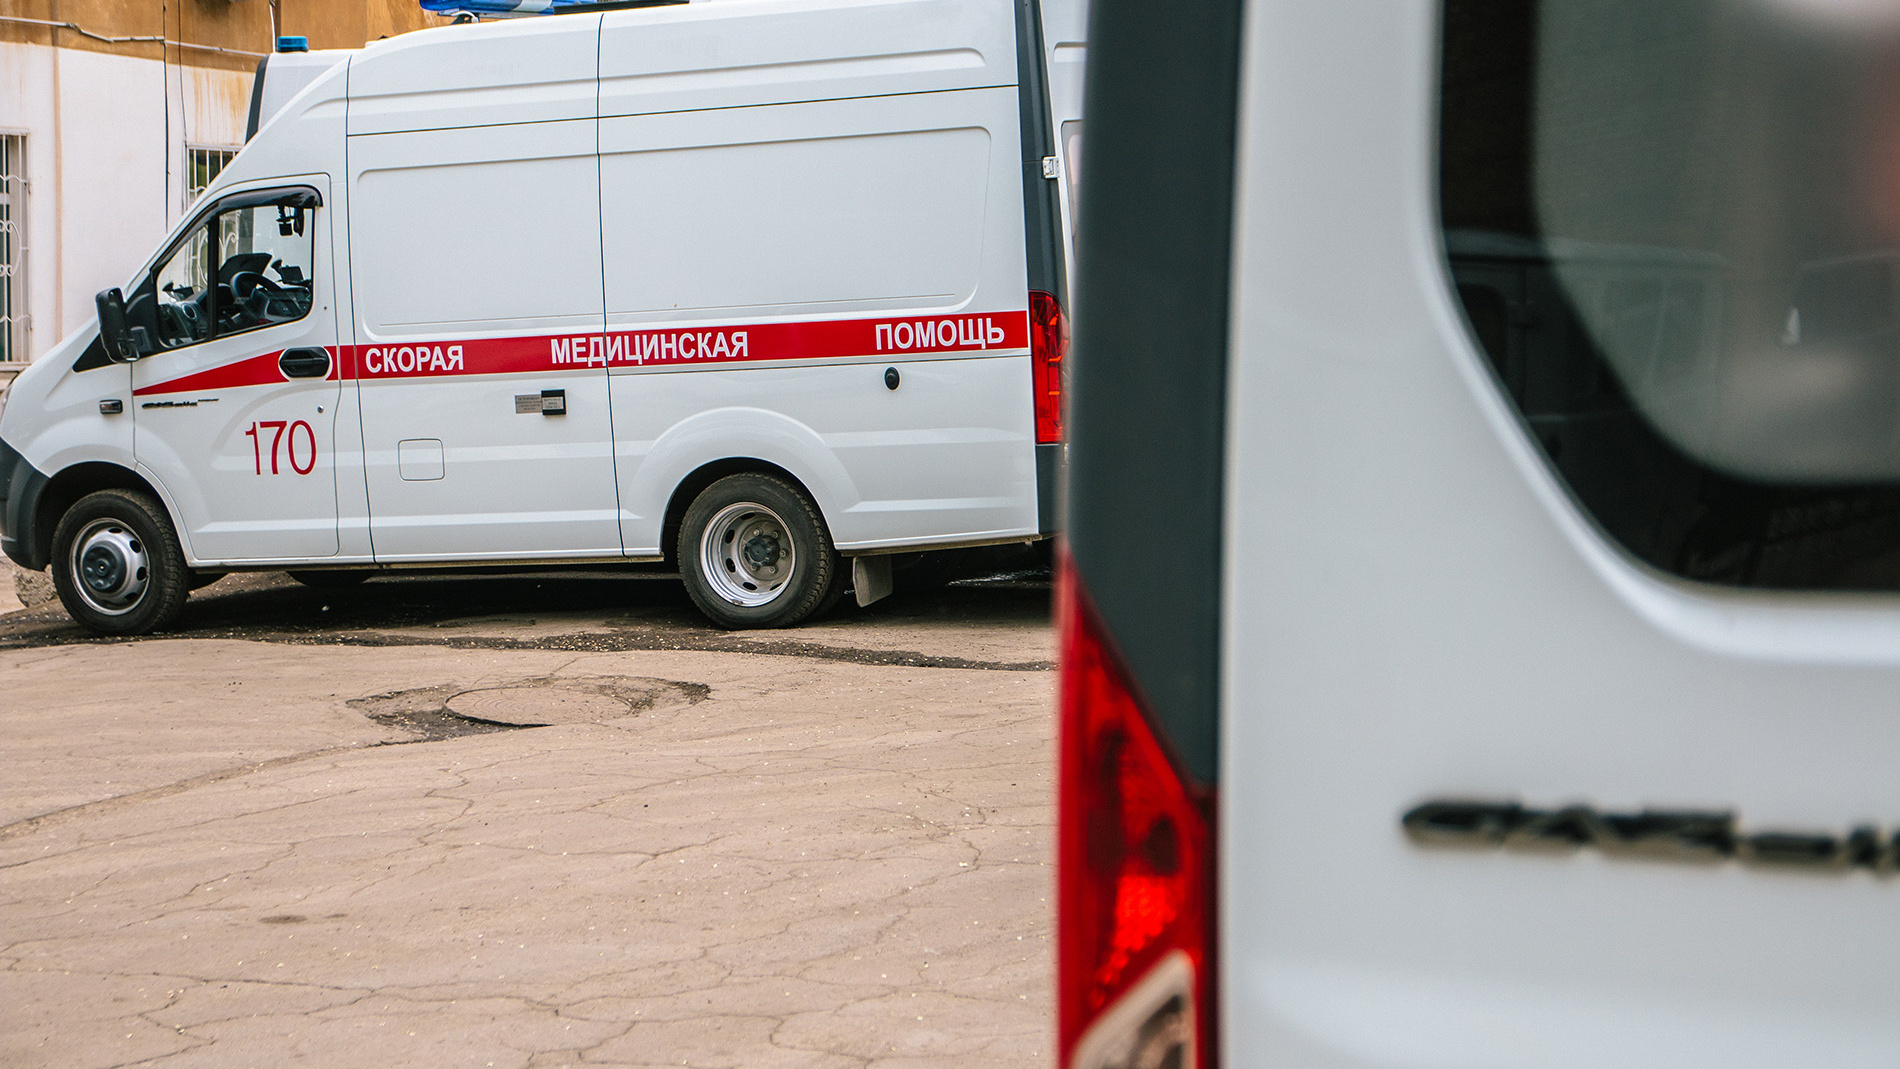 Перевозить пациентов скорой помощи в Самаре будет частник. Рассказываем, кто стоит за фирмой